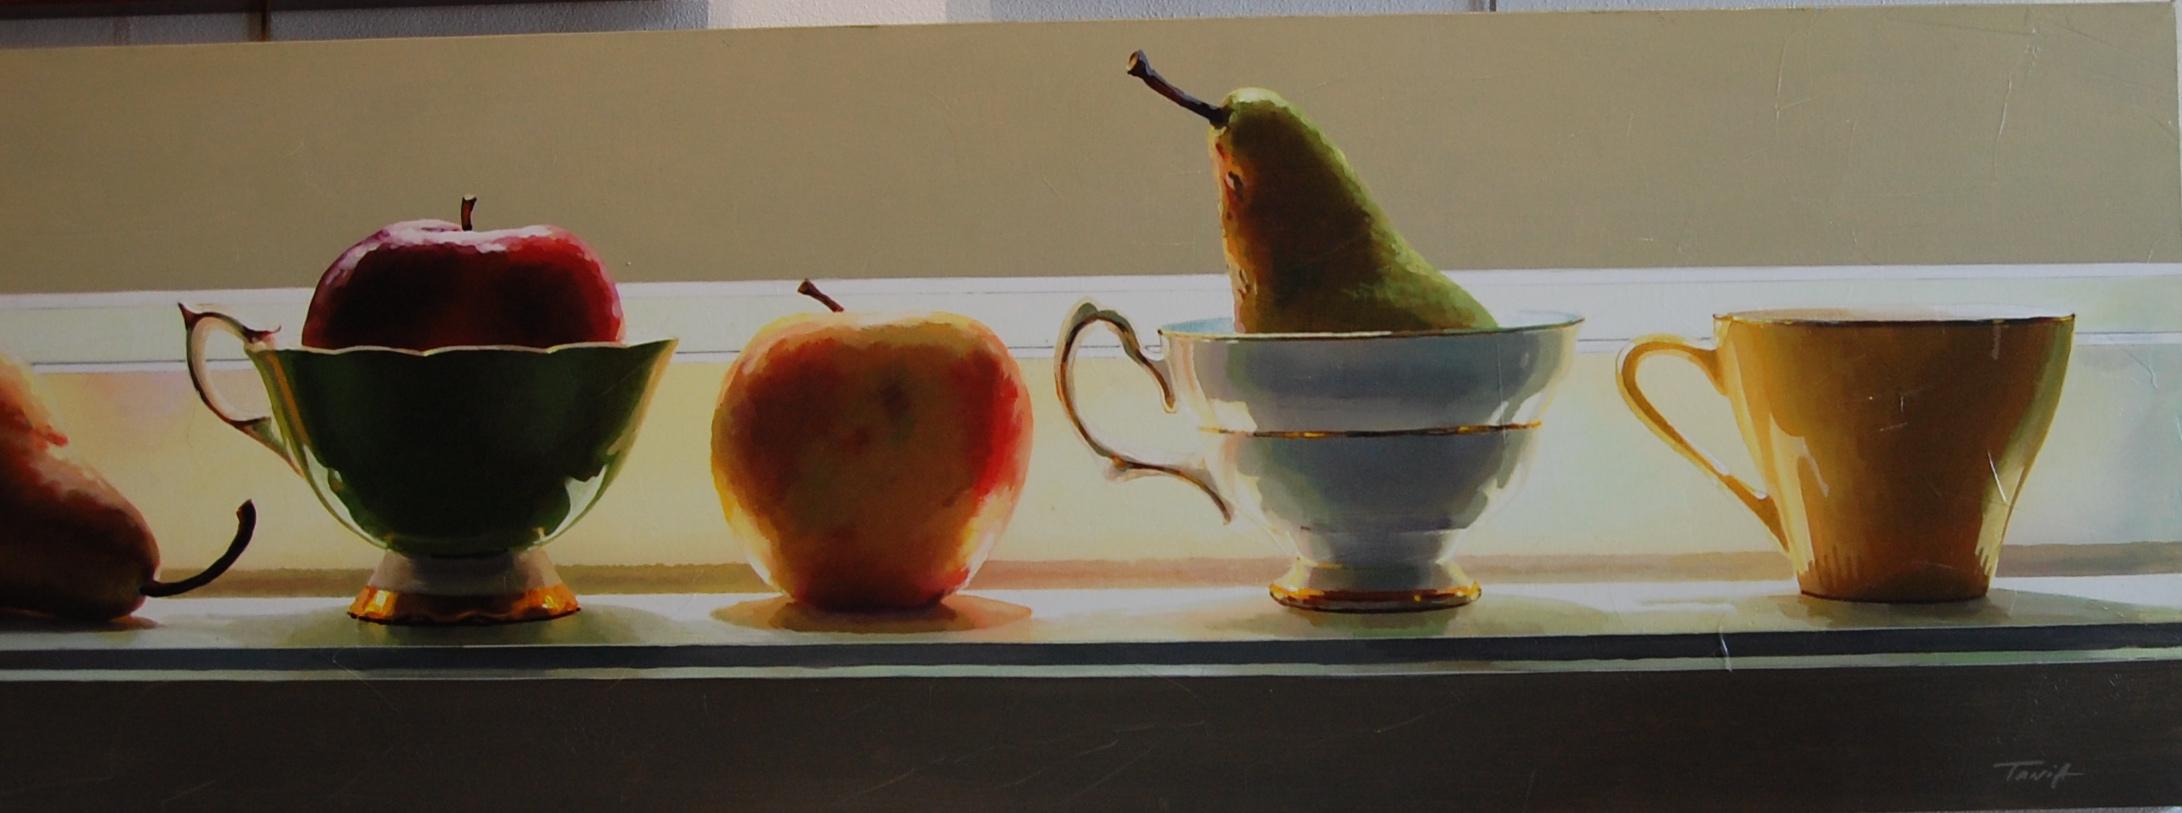  Glänzende Kapuzen und Früchte  – Painting von Tania Darashkevich